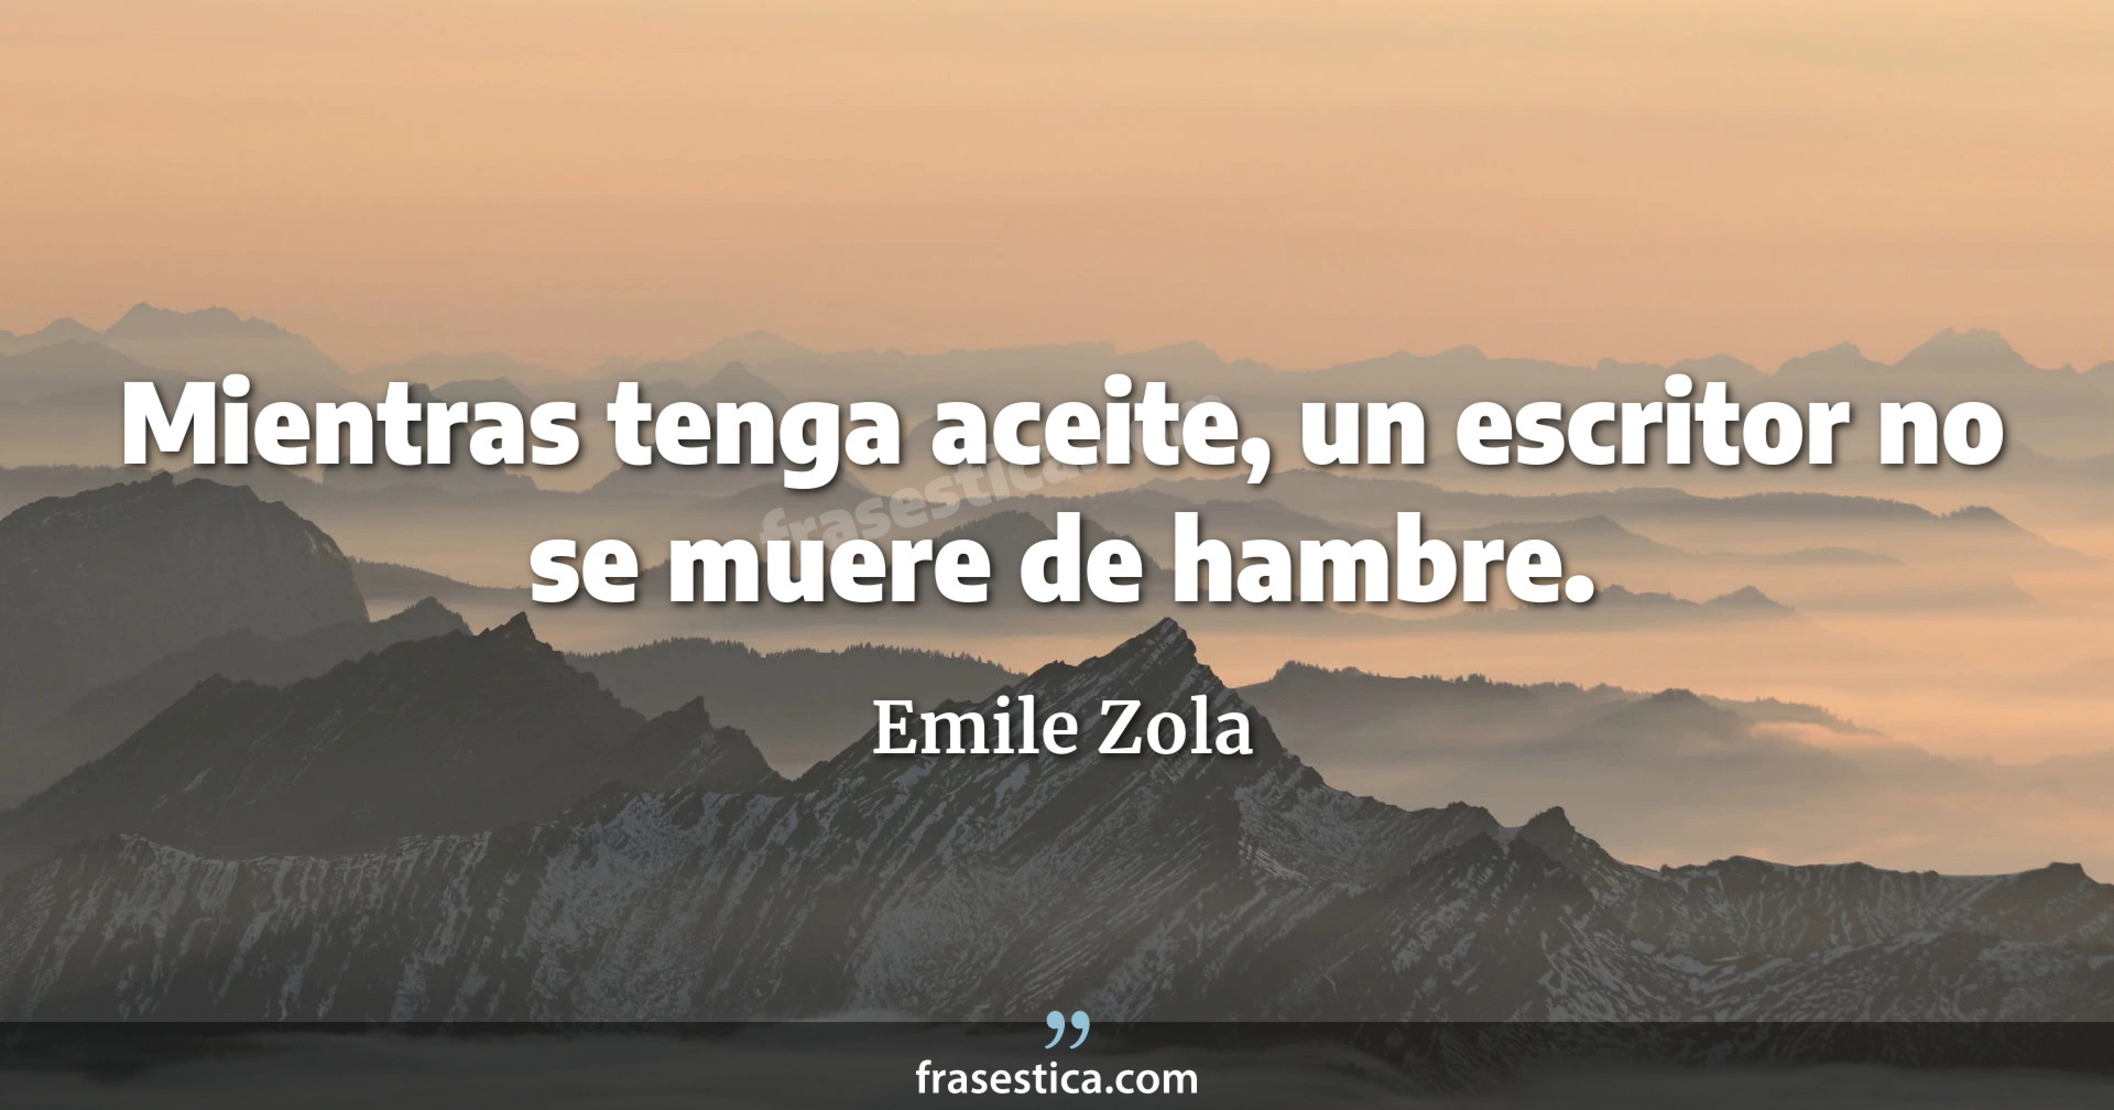 Mientras tenga aceite, un escritor no se muere de hambre. - Emile Zola